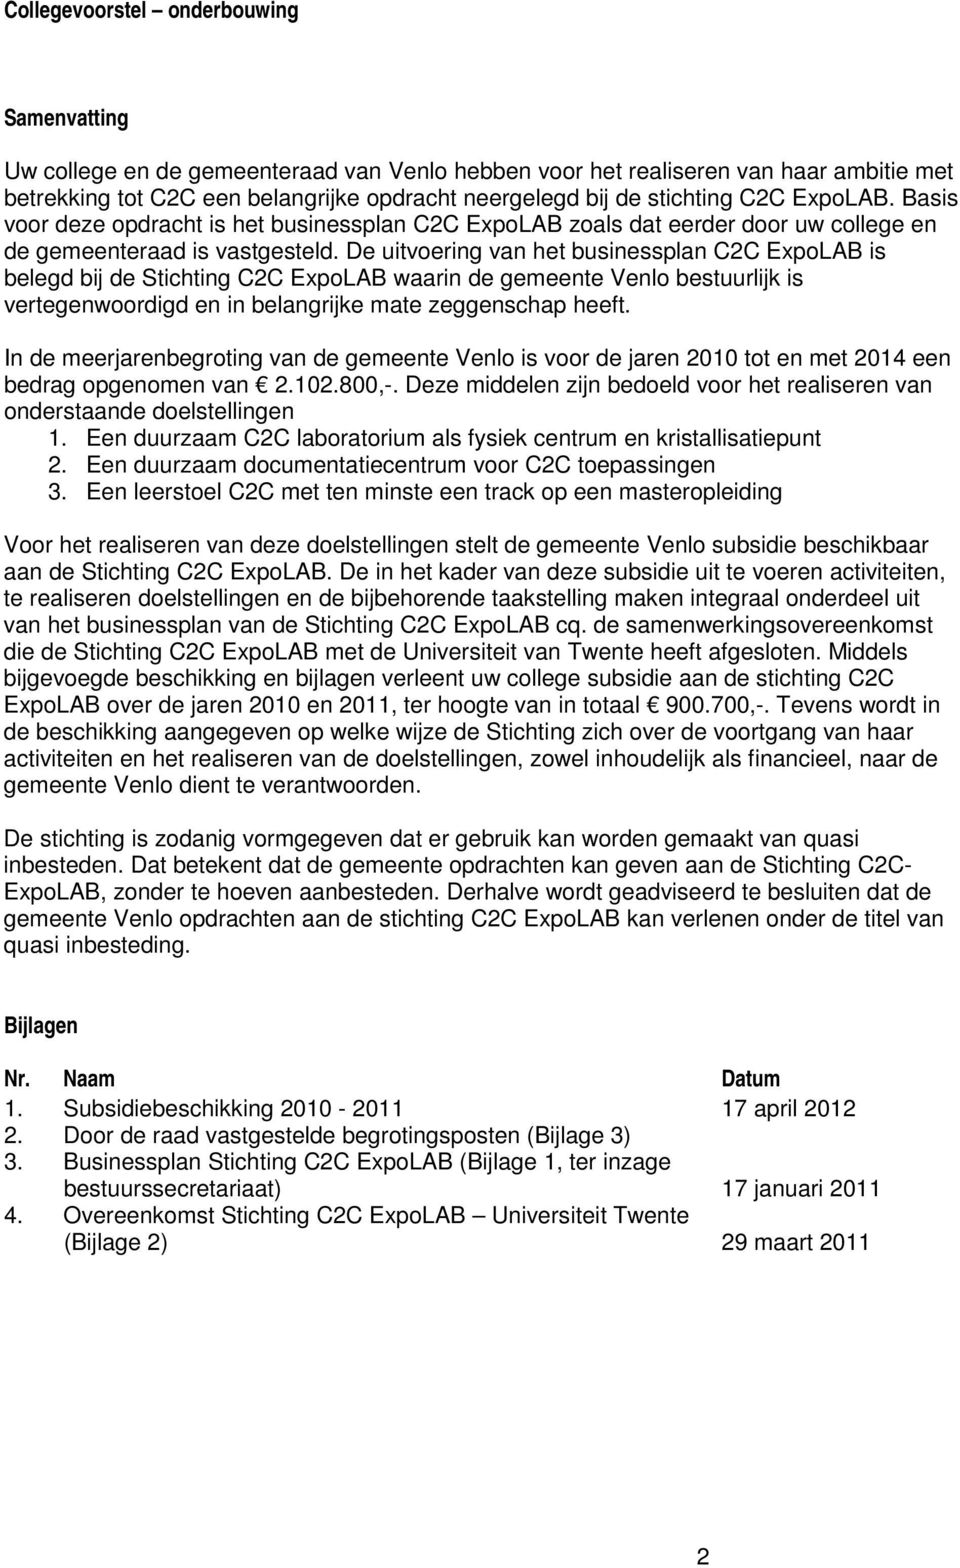 De uitvoering van het businessplan C2C ExpoLAB is belegd bij de Stichting C2C ExpoLAB waarin de gemeente Venlo bestuurlijk is vertegenwoordigd en in belangrijke mate zeggenschap heeft.